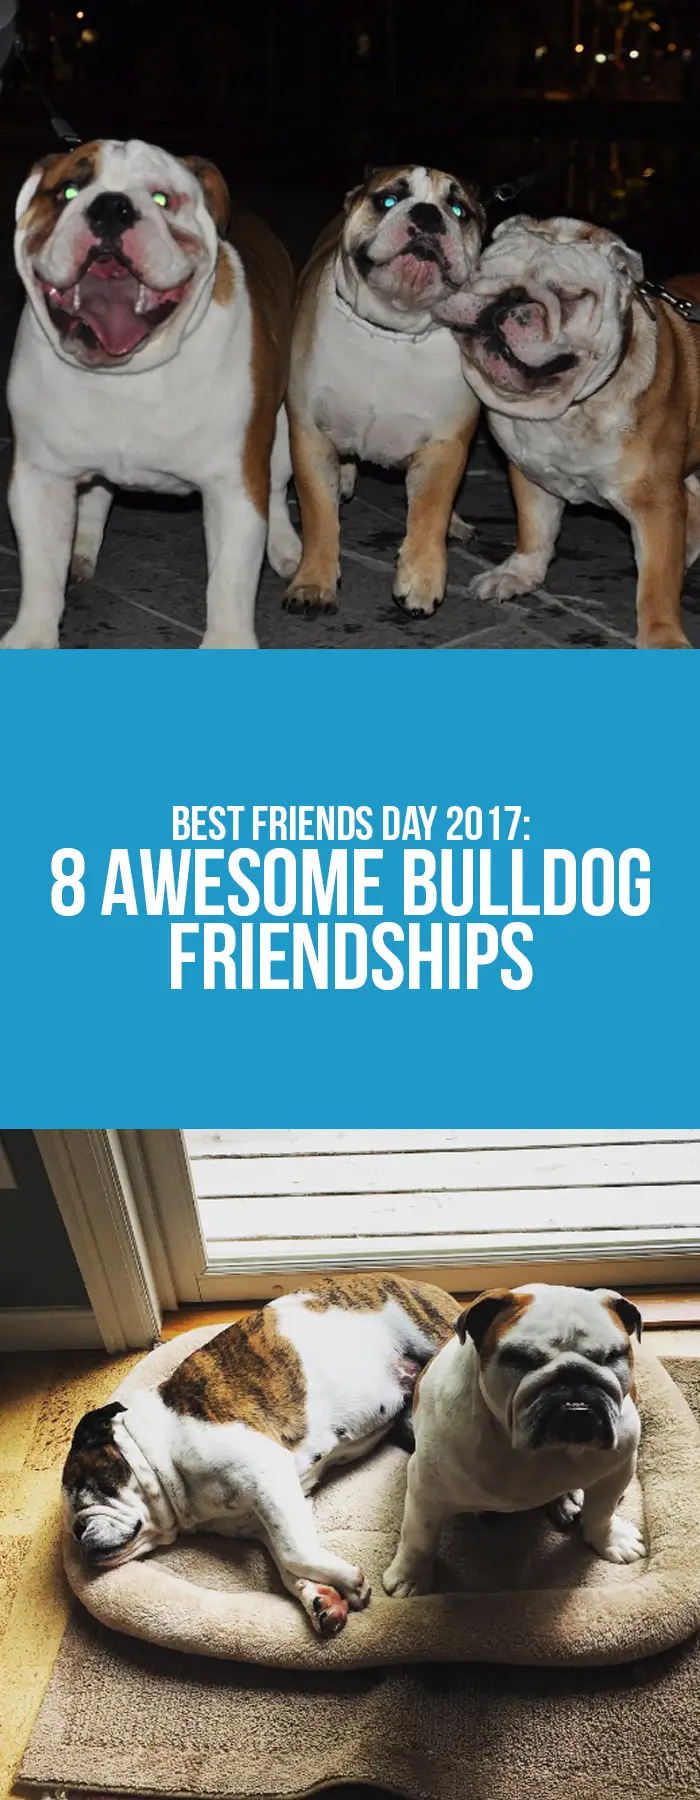 Bulldog Friendships